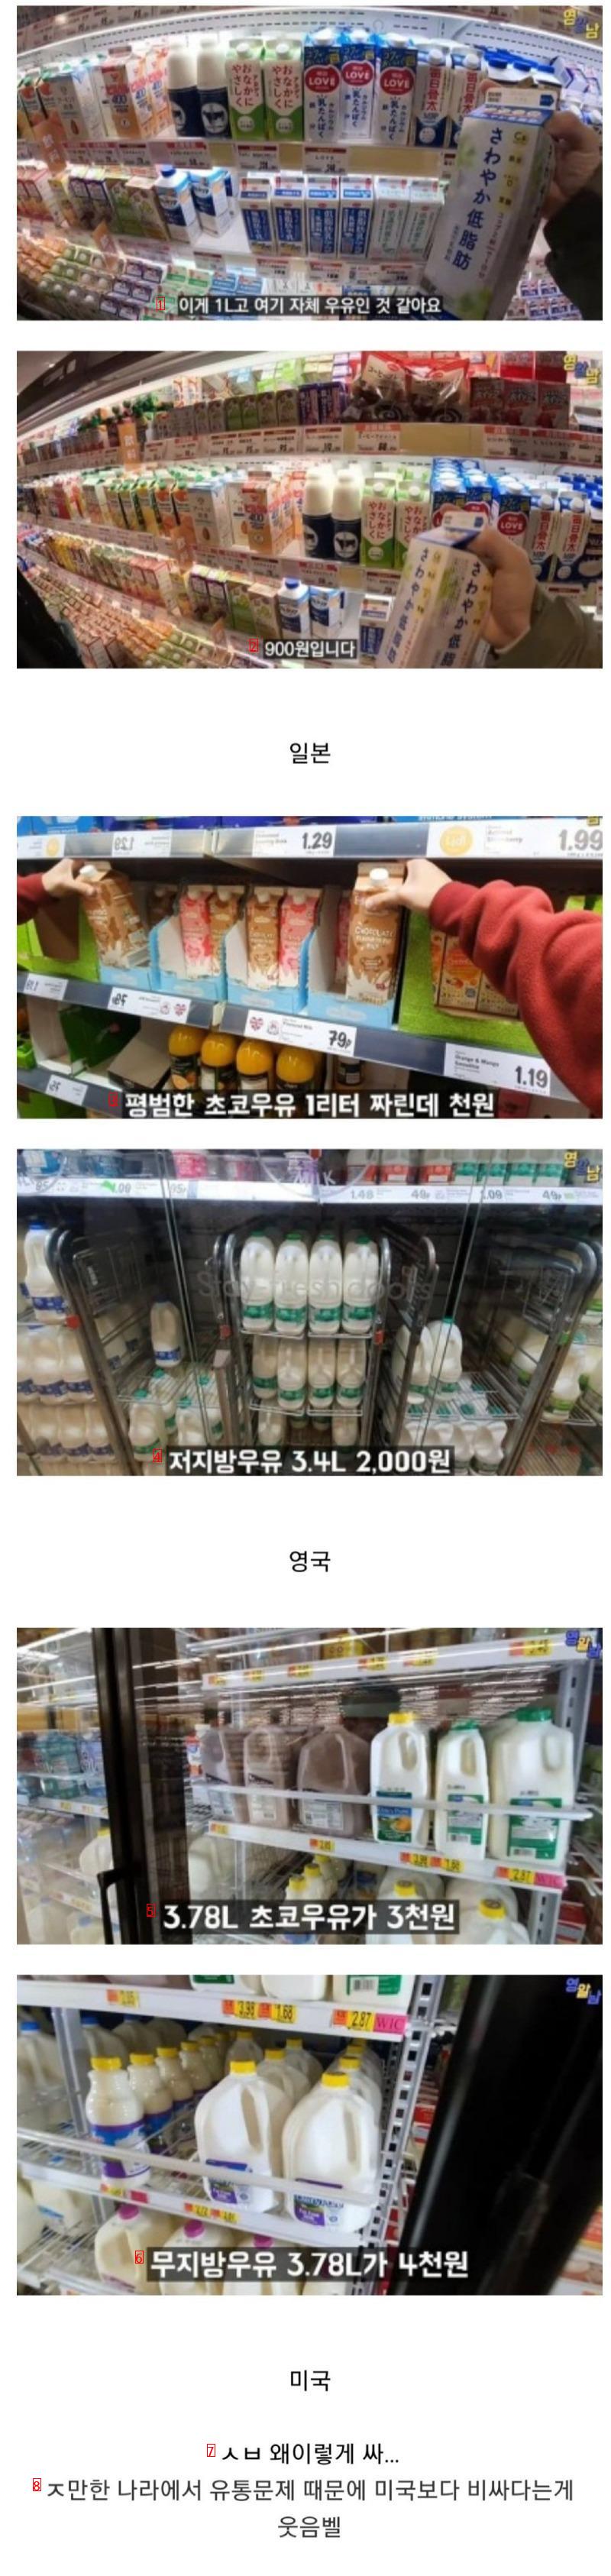 海外牛乳価格の近況